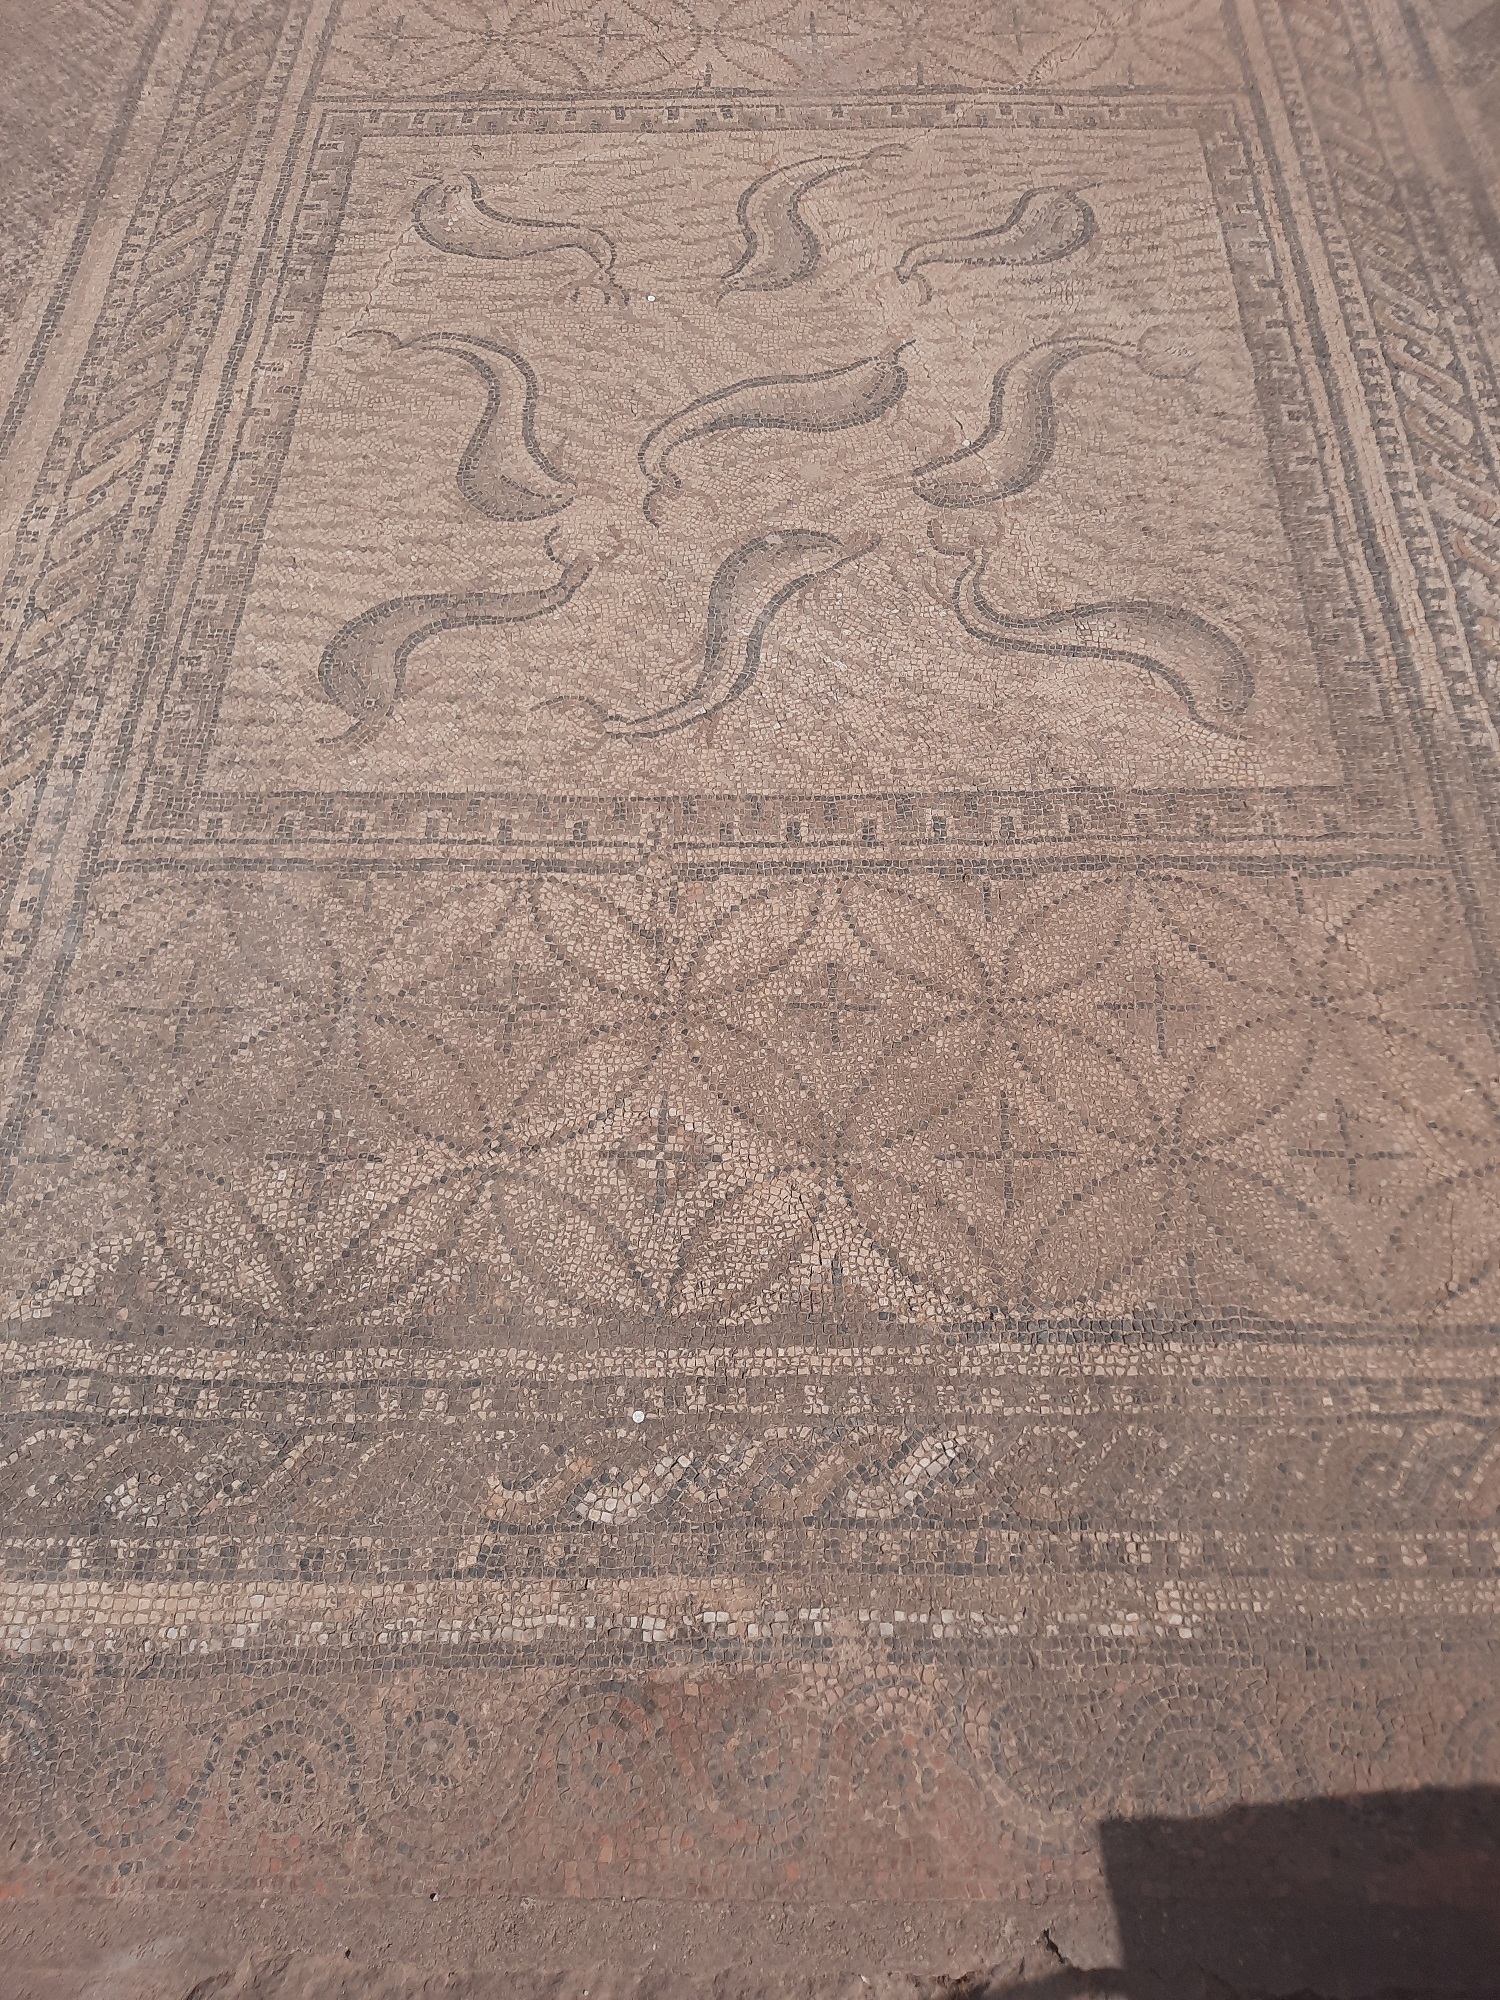 A delfinek mozaikja az Orpheus-ház egyik padlódísze volt.